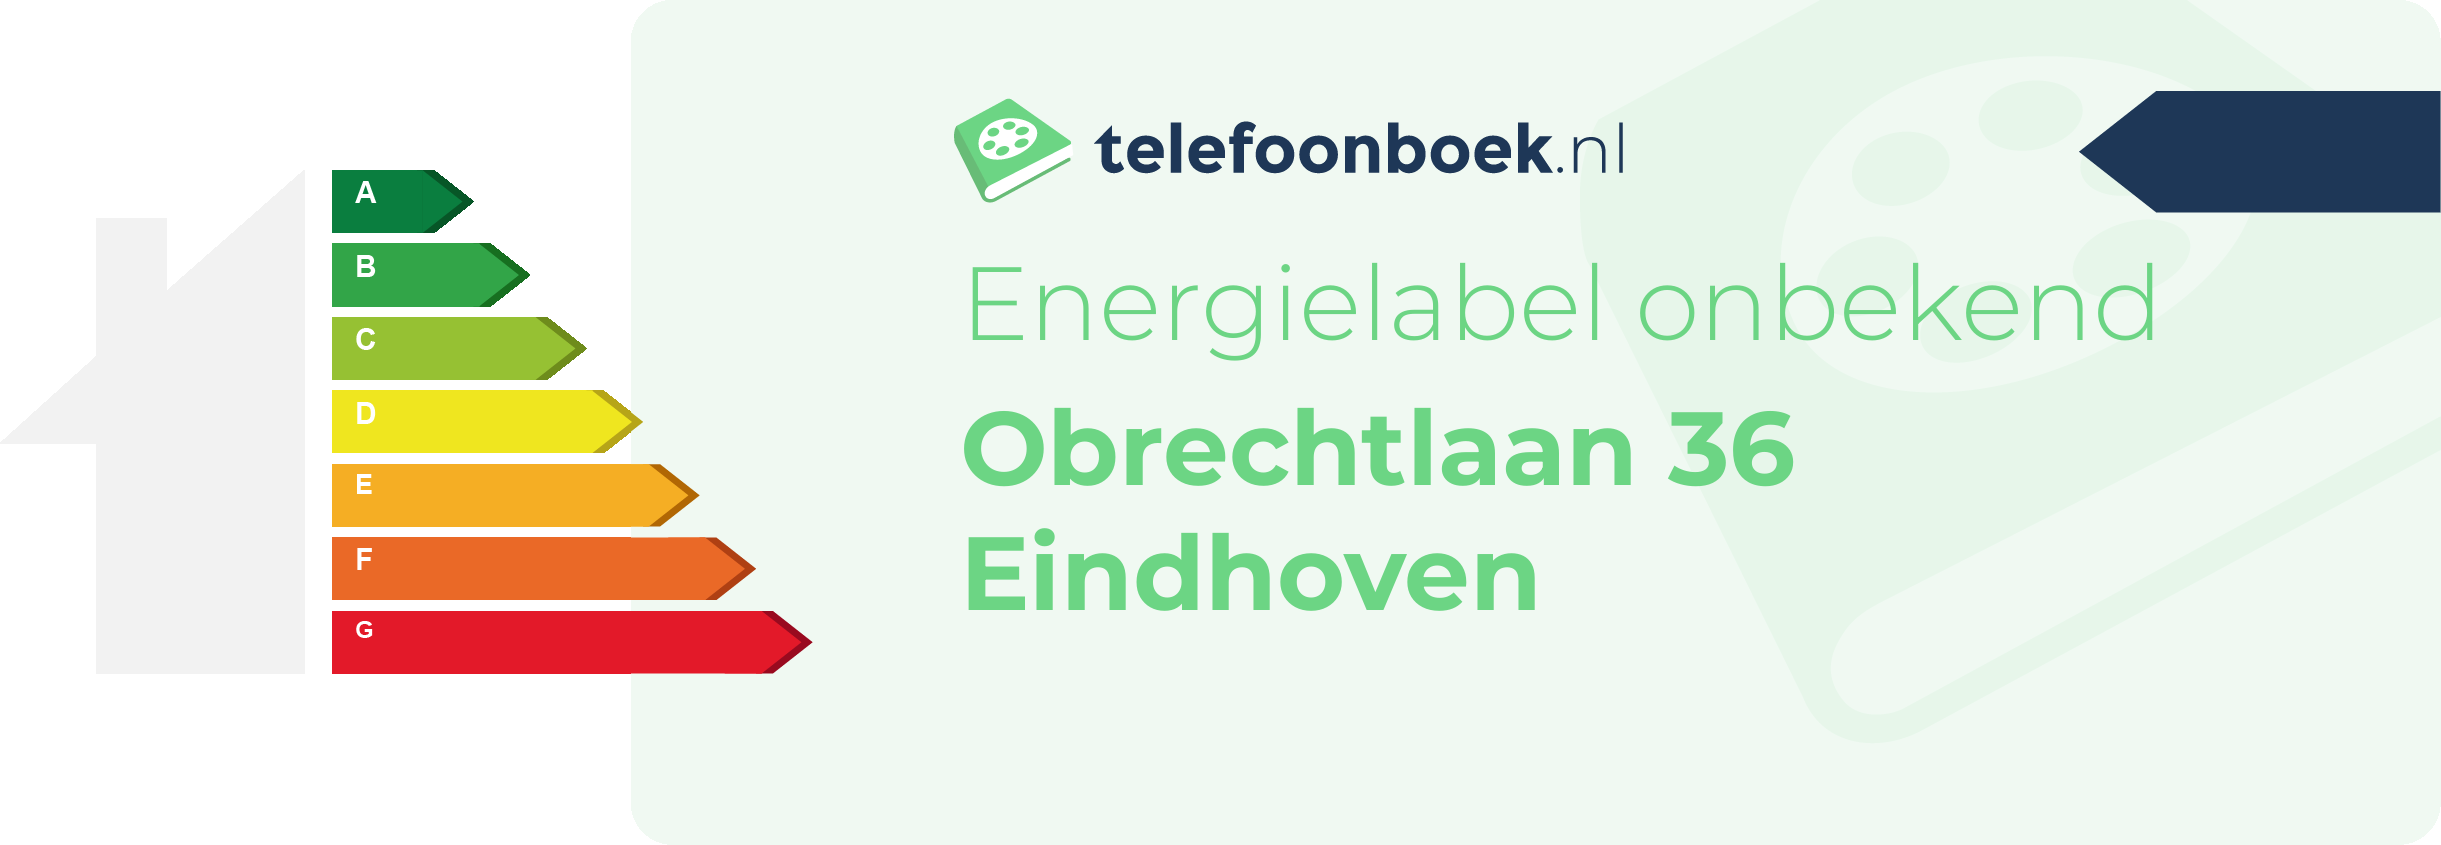 Energielabel Obrechtlaan 36 Eindhoven